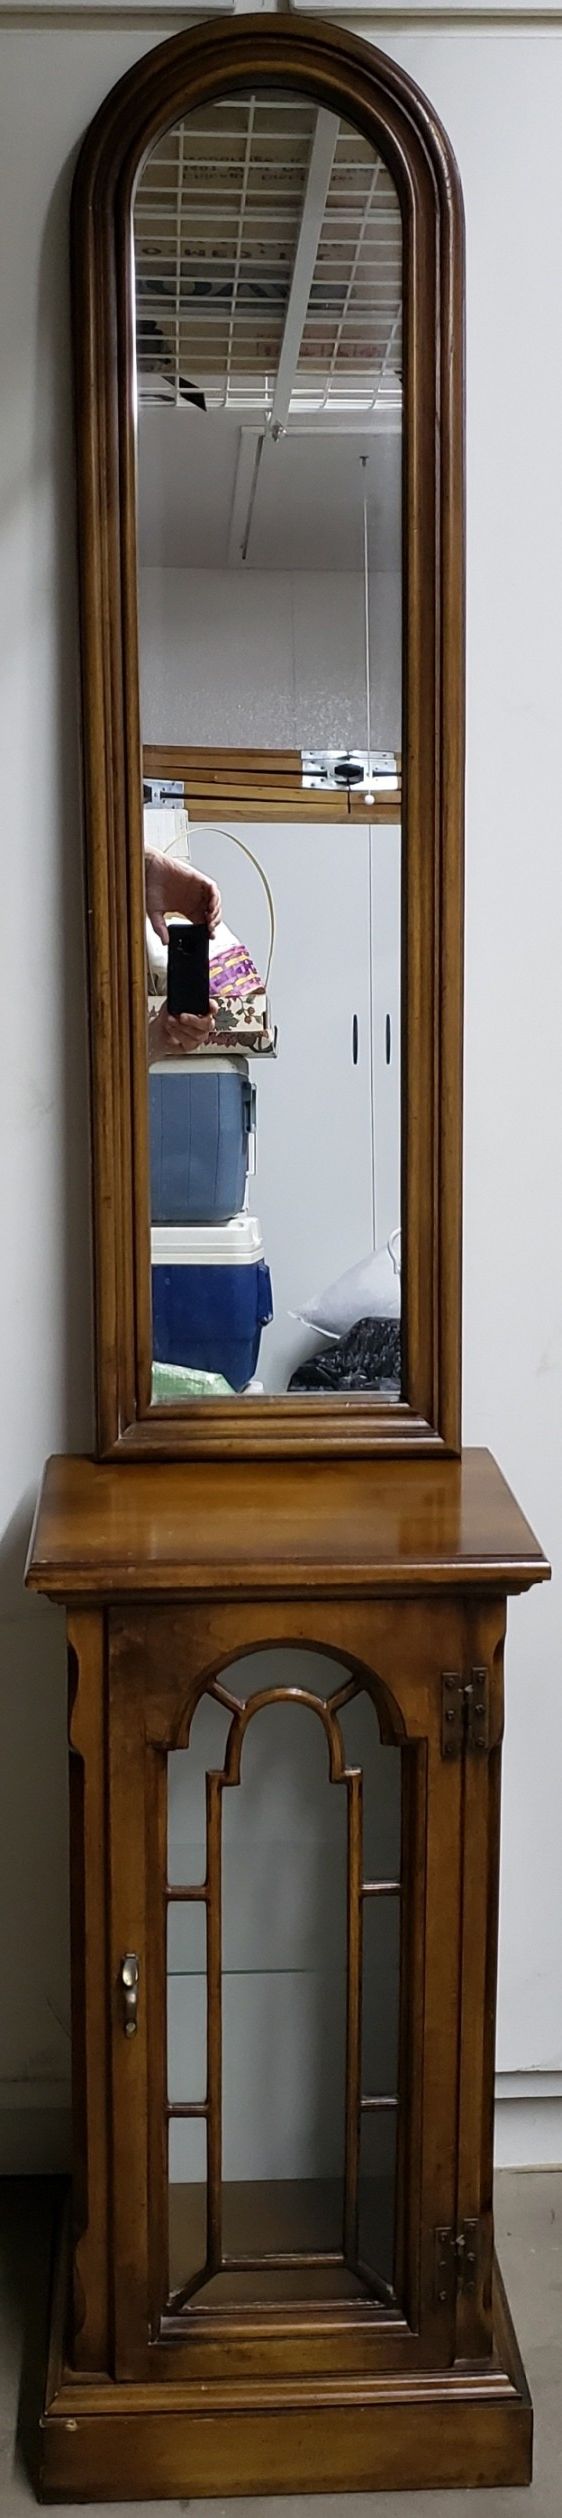 Curio cabinet and mirror